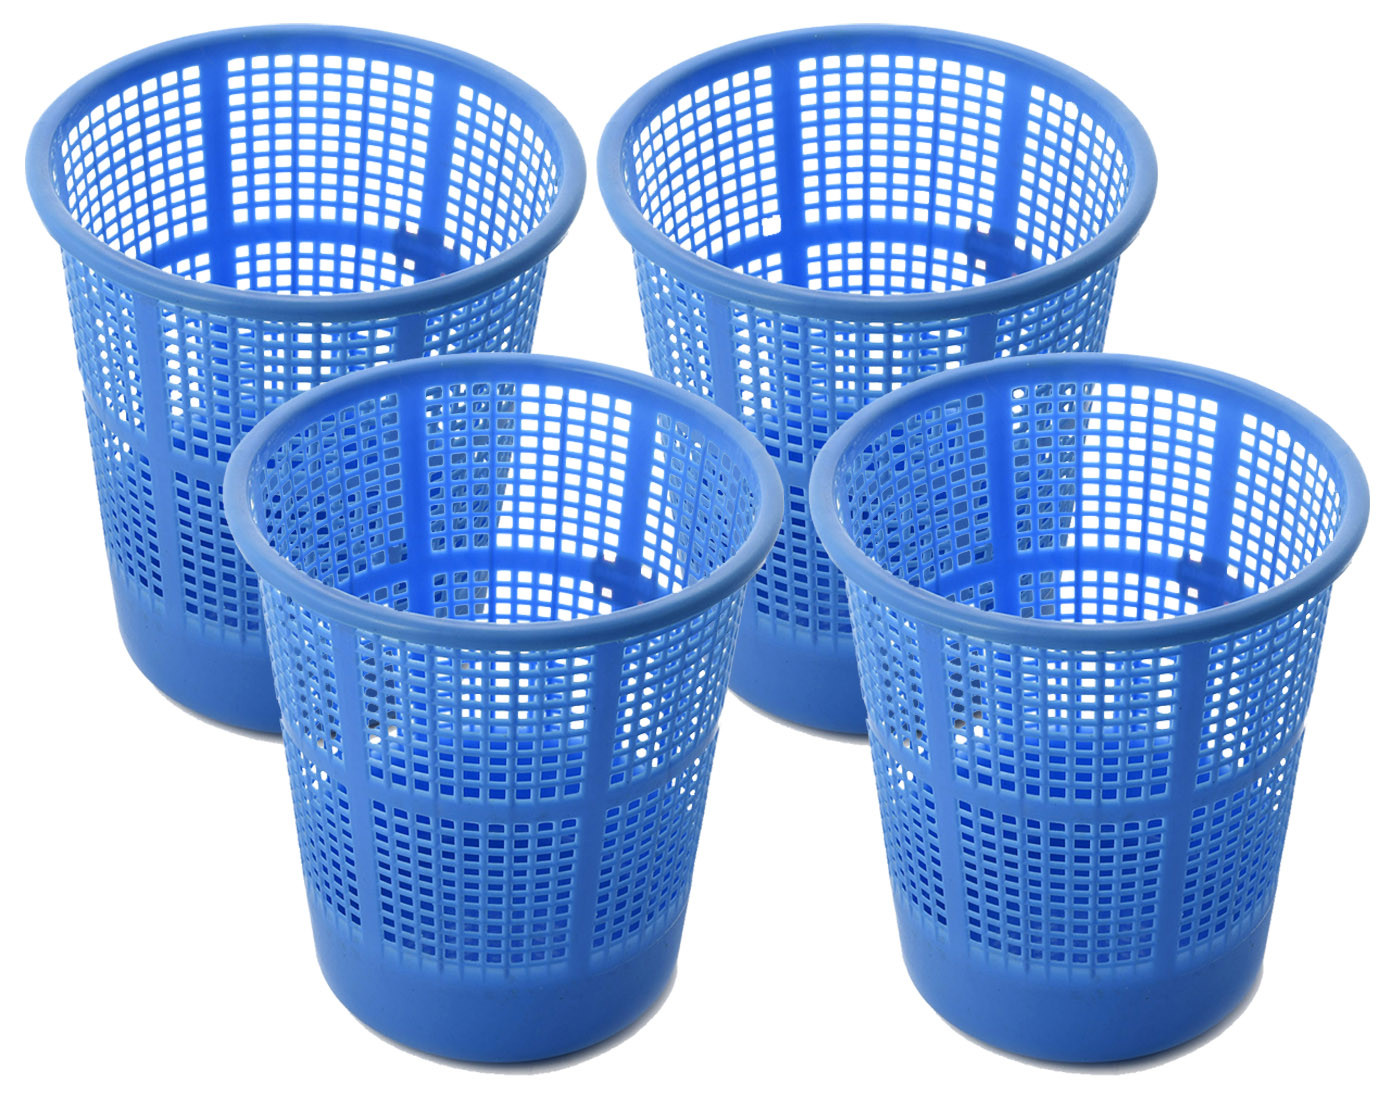 Kuber Industries Plastic Mesh Dustbin Garbage Bin for Office use, School, Bedroom,Kids Room, Home, Multi Purpose,5 Liters (Blue)